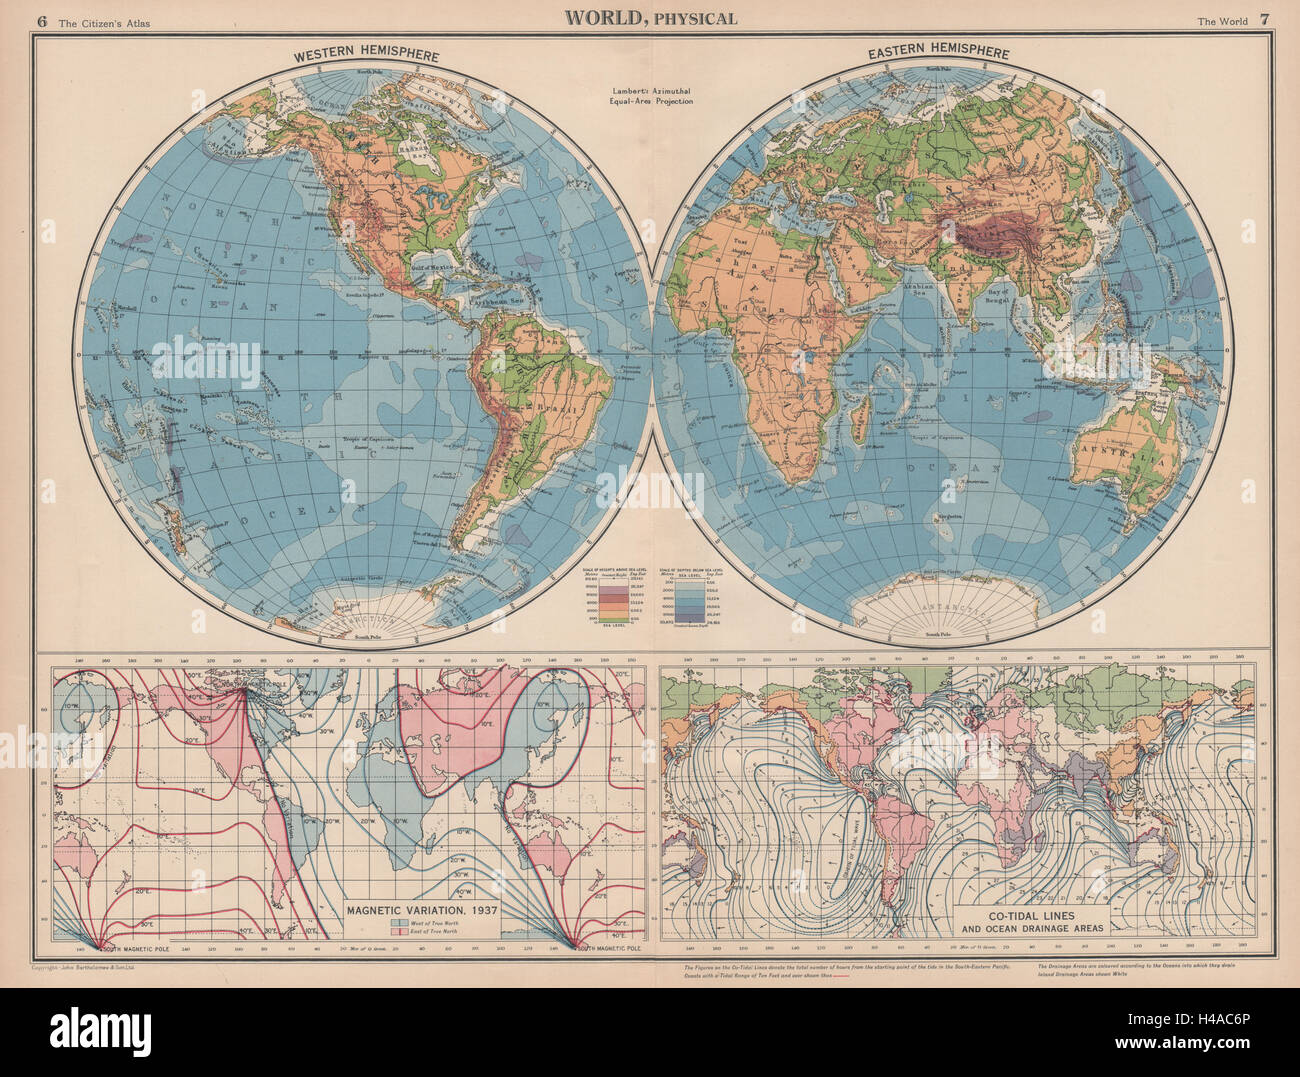 Monde de la variation magnétique & COTIDAL LIGNES. Physique. Le Drainage de l'océan. Carte 1944 Banque D'Images